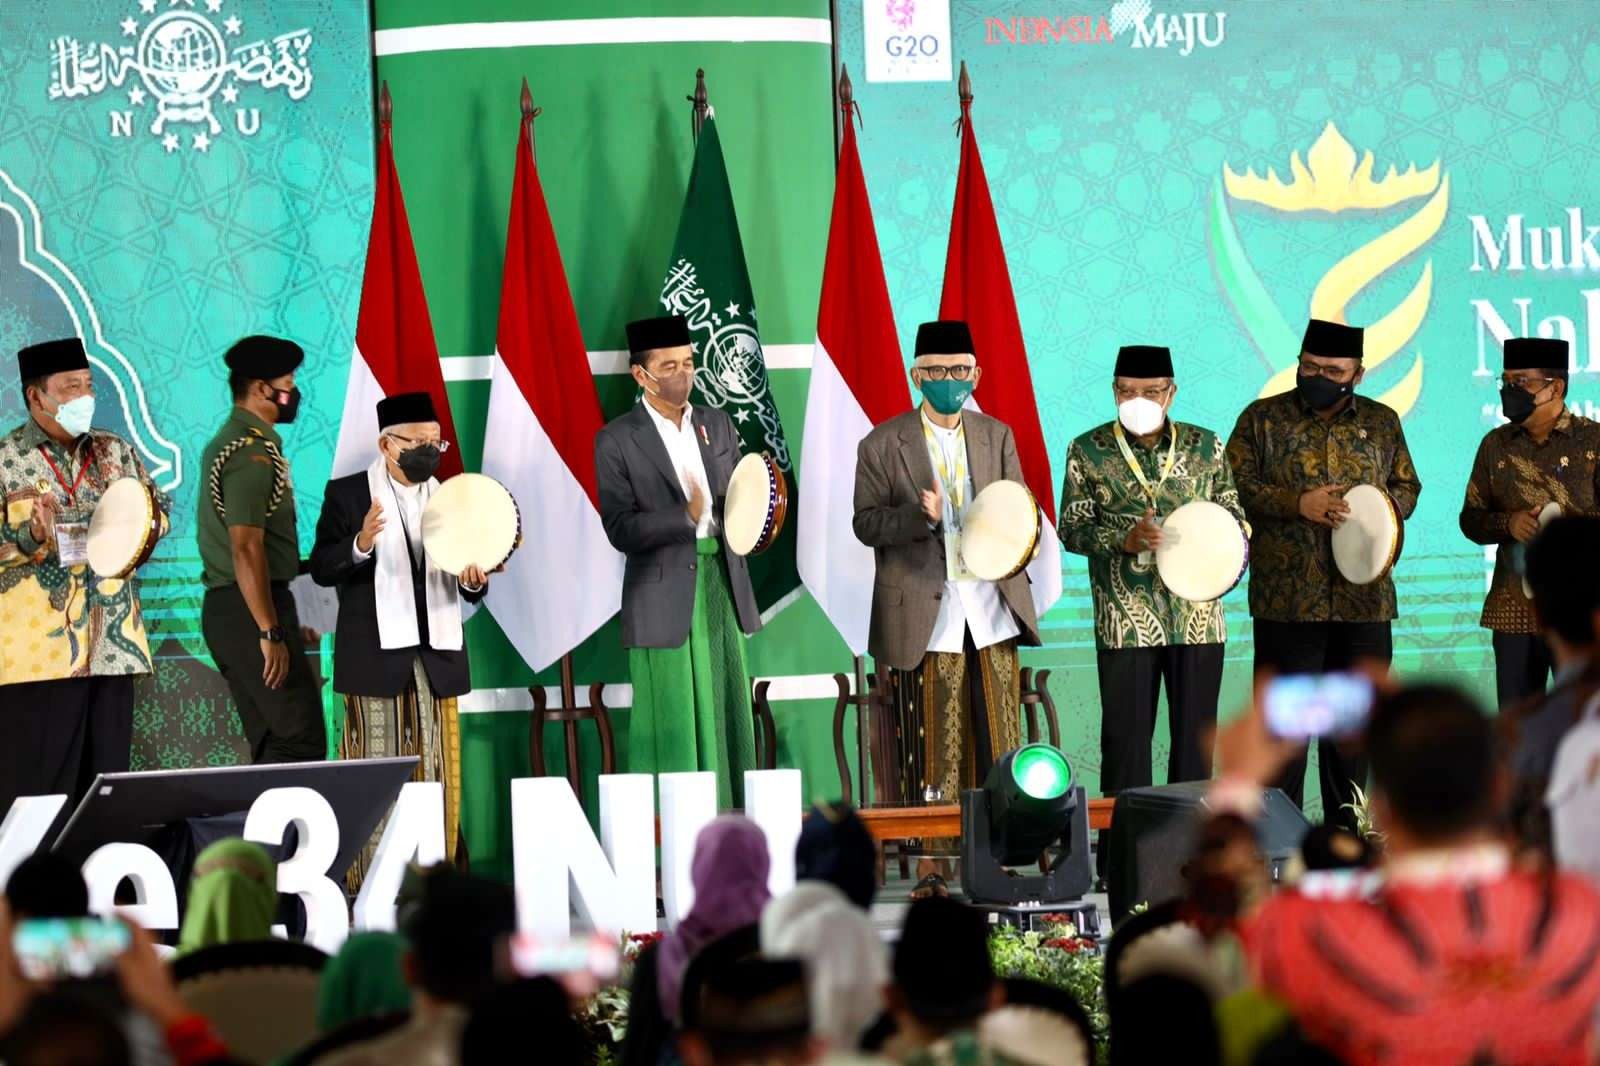 Presiden Jokowi dan Wapres Ma'ruf Amin saat Pembukaan Muktamar ke-34 NU di Lampung. (Foto:Ngopinareng.id)